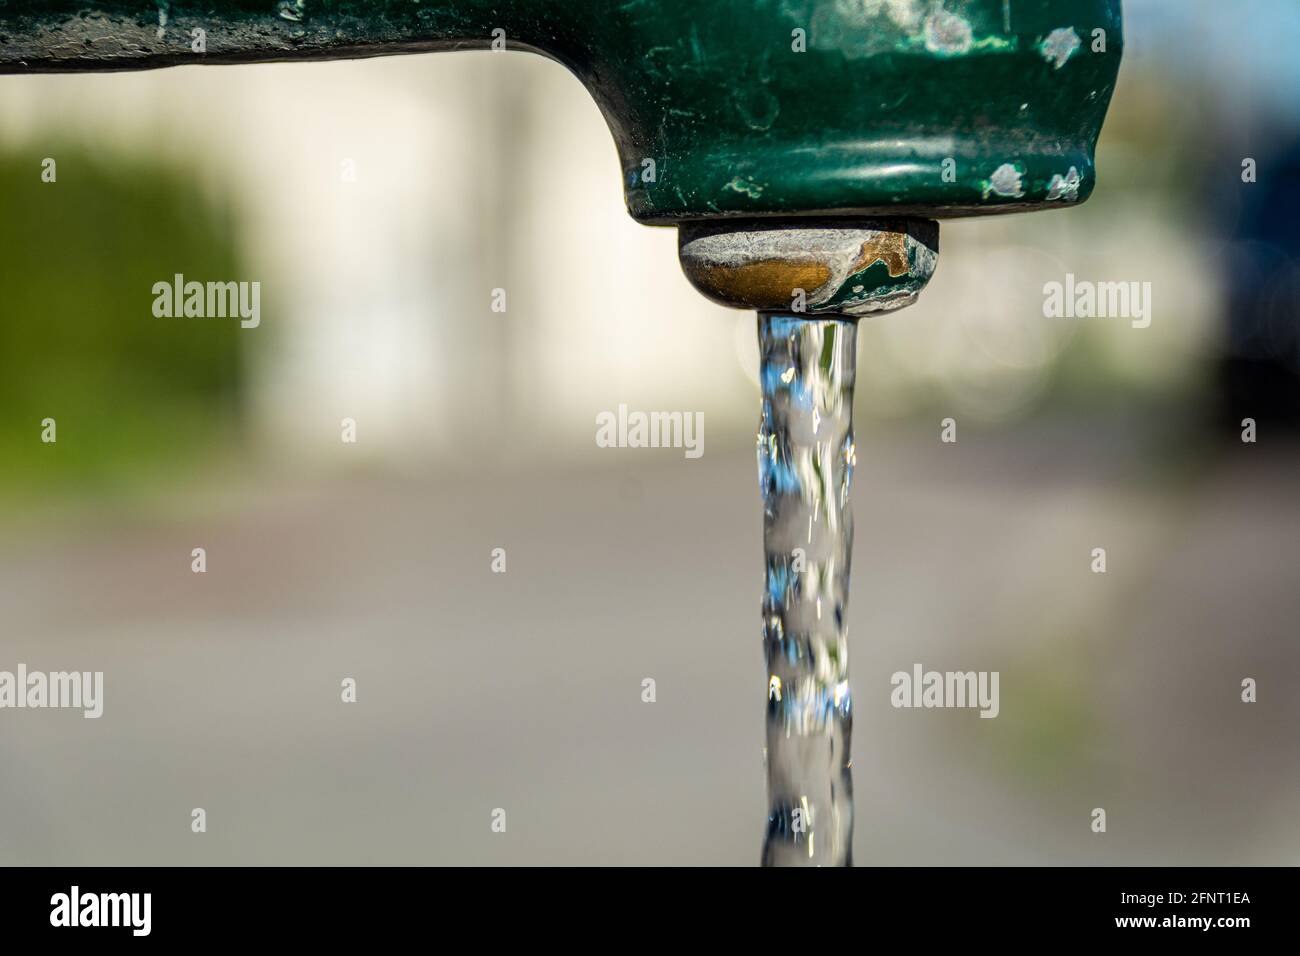 Fontaine publique typique de Vienne, Autriche. De l'eau pure et fraîche coule de la fontaine. Arrière-plan de rue de ville flou. Banque D'Images